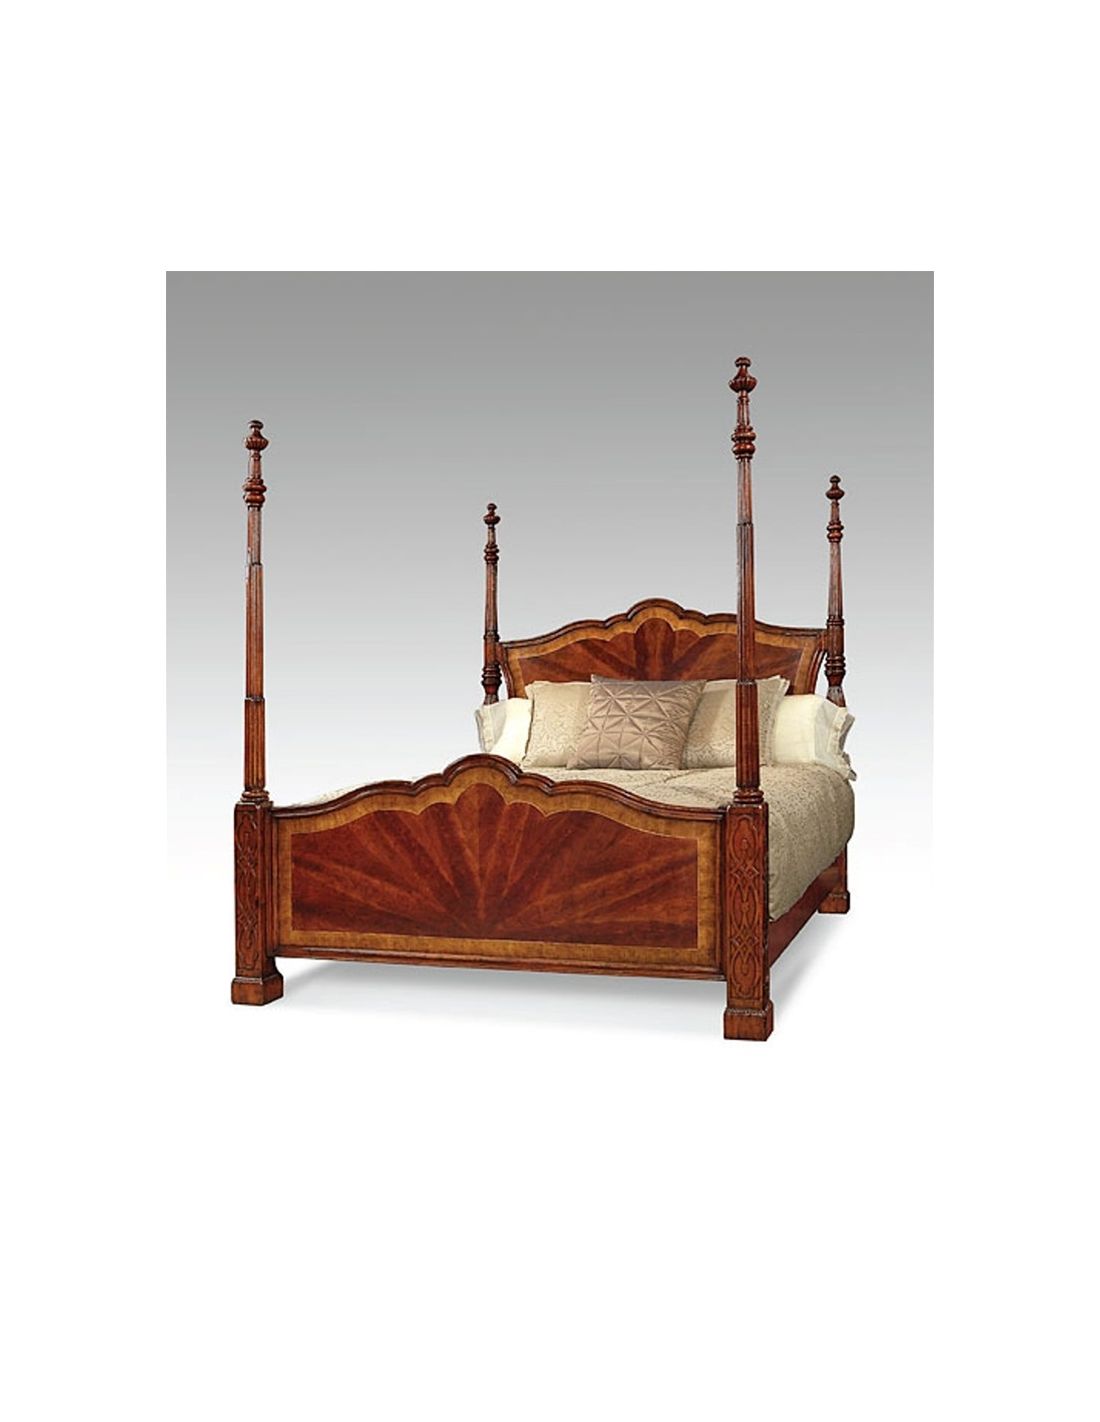 Four Post Bed King Bedroom Furniture, 4 Poster King Bed Set